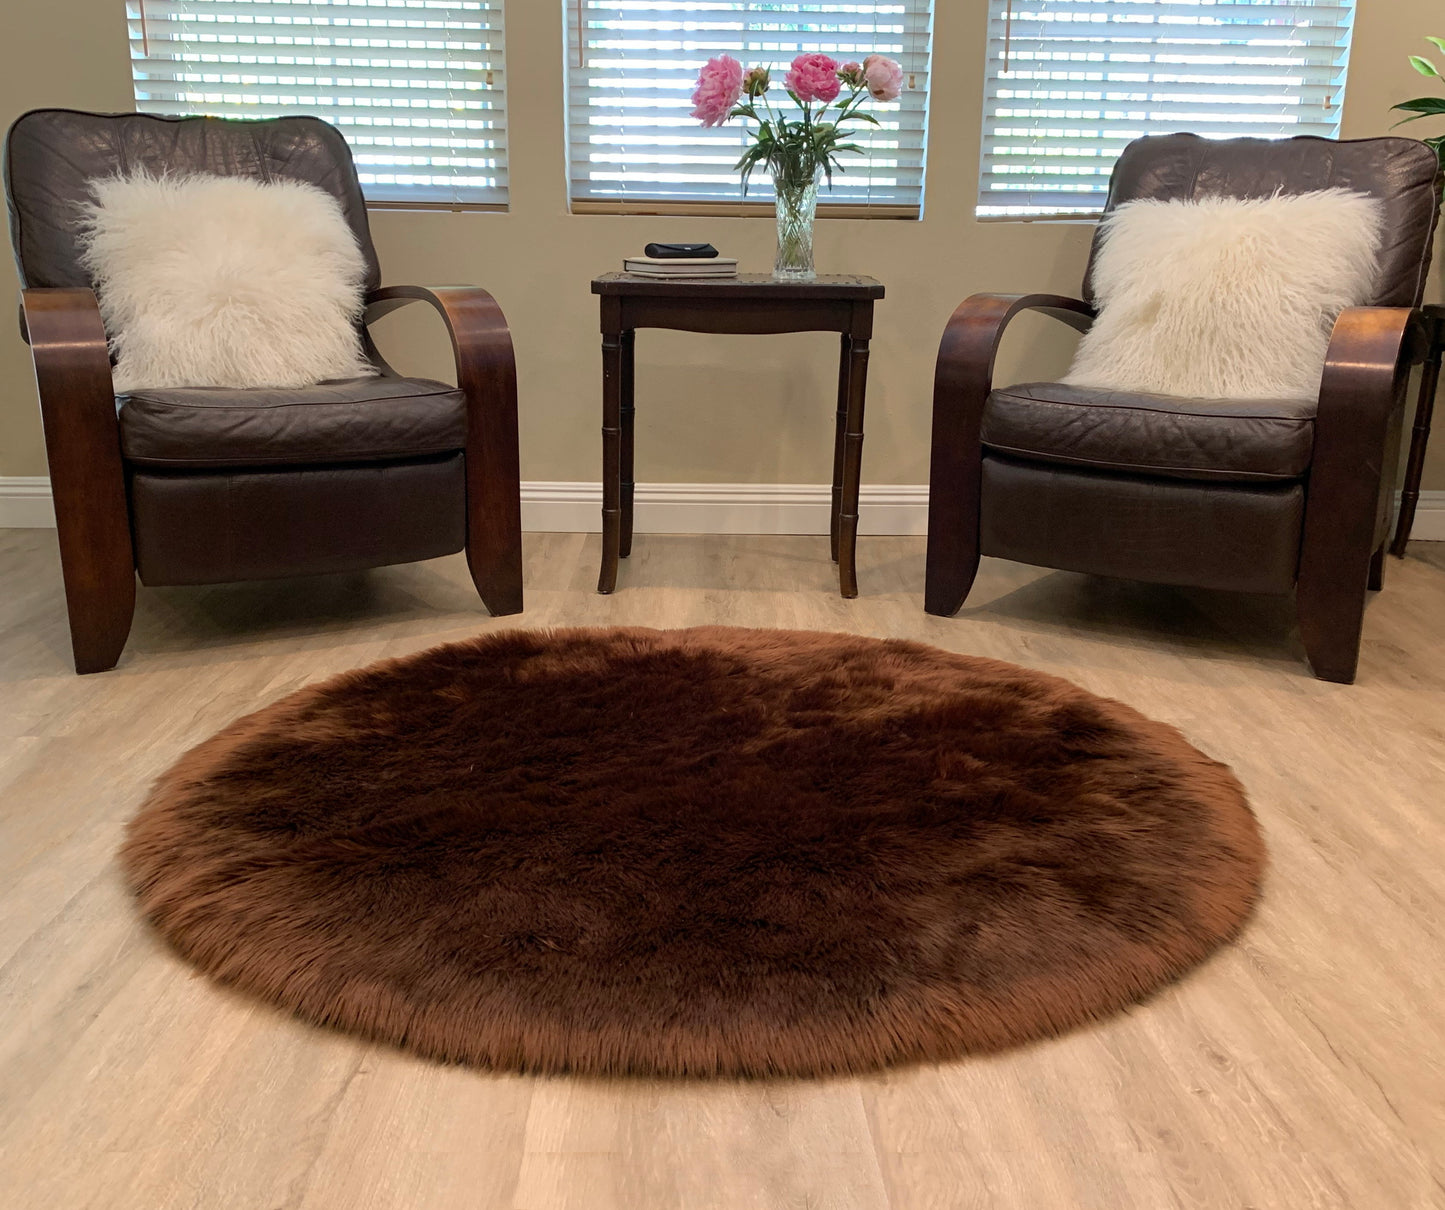 Faux sheepskin rug Oval Shaped 2'X3' (60cm x 90cm)